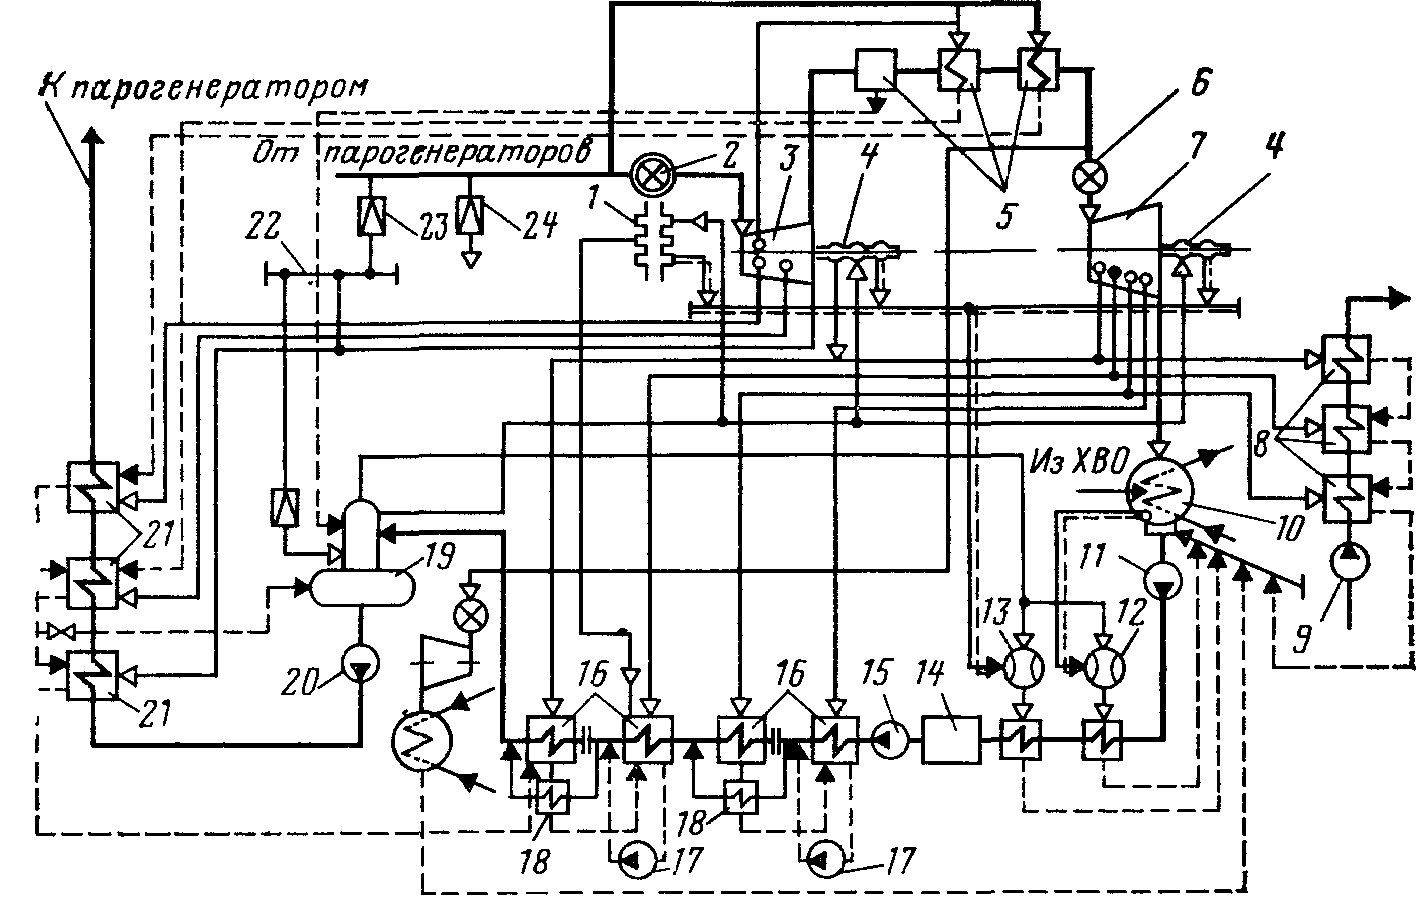 тепловая схема турбоустановки К-1000-60/1500 двухконтурной АЭС с ВВЭР-1000